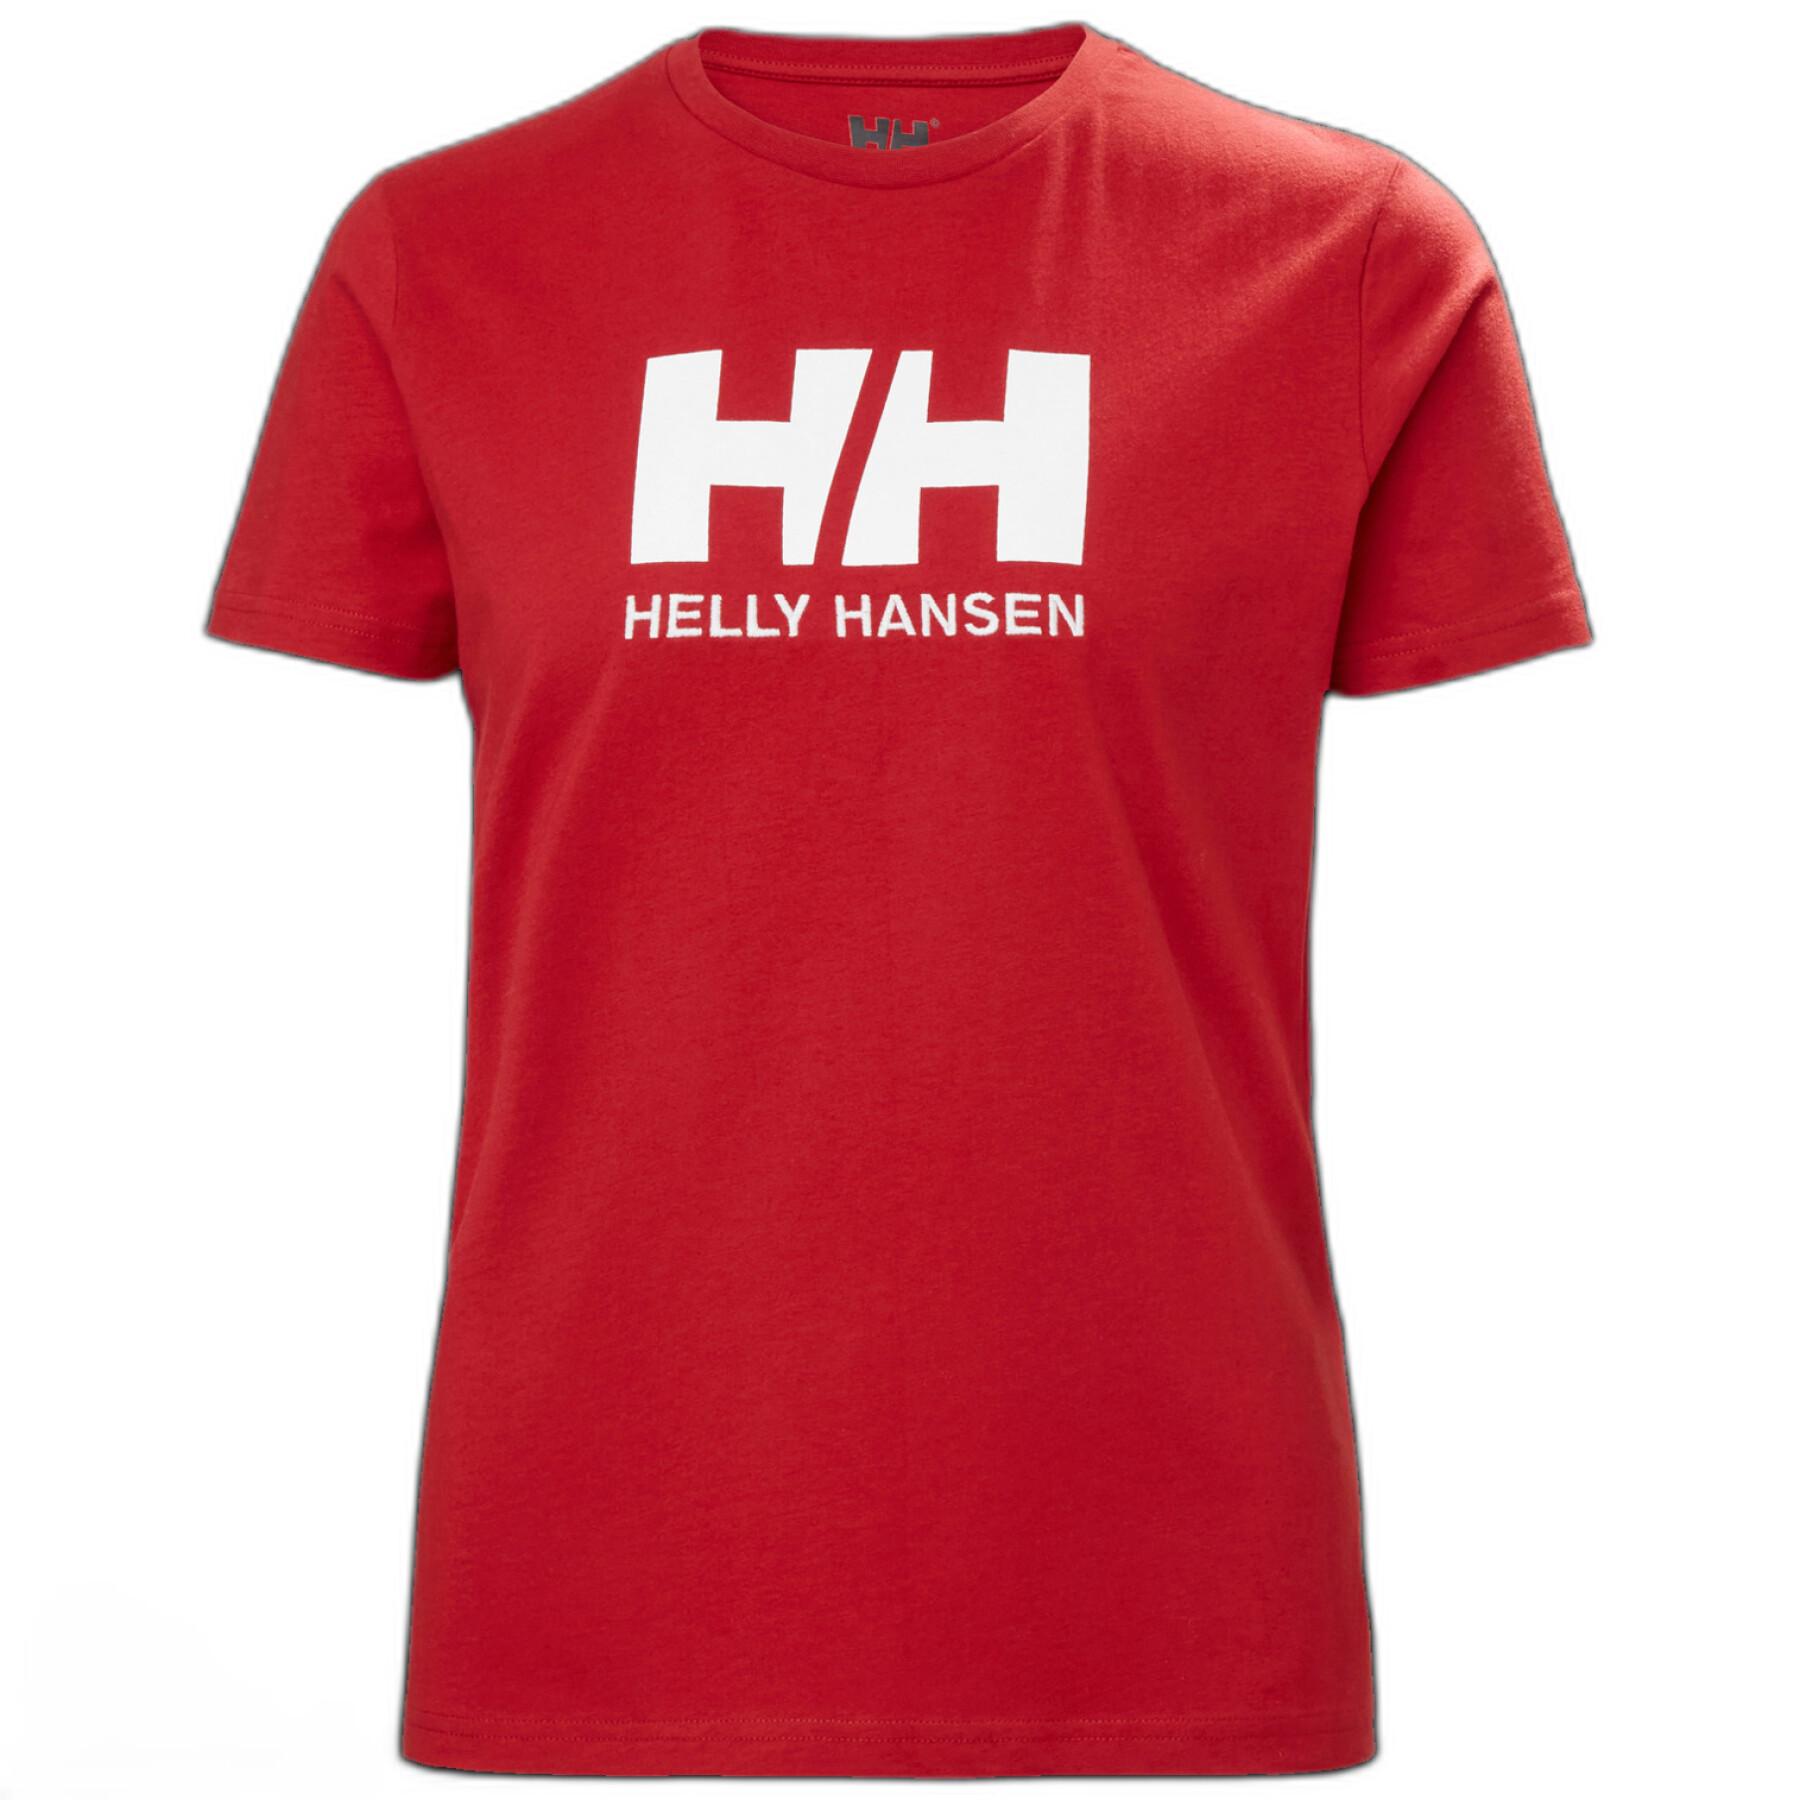 Slechte factor rok in de rij gaan staan Women's T-shirt Helly Hansen logo - T-shirts - Textile - Fishing